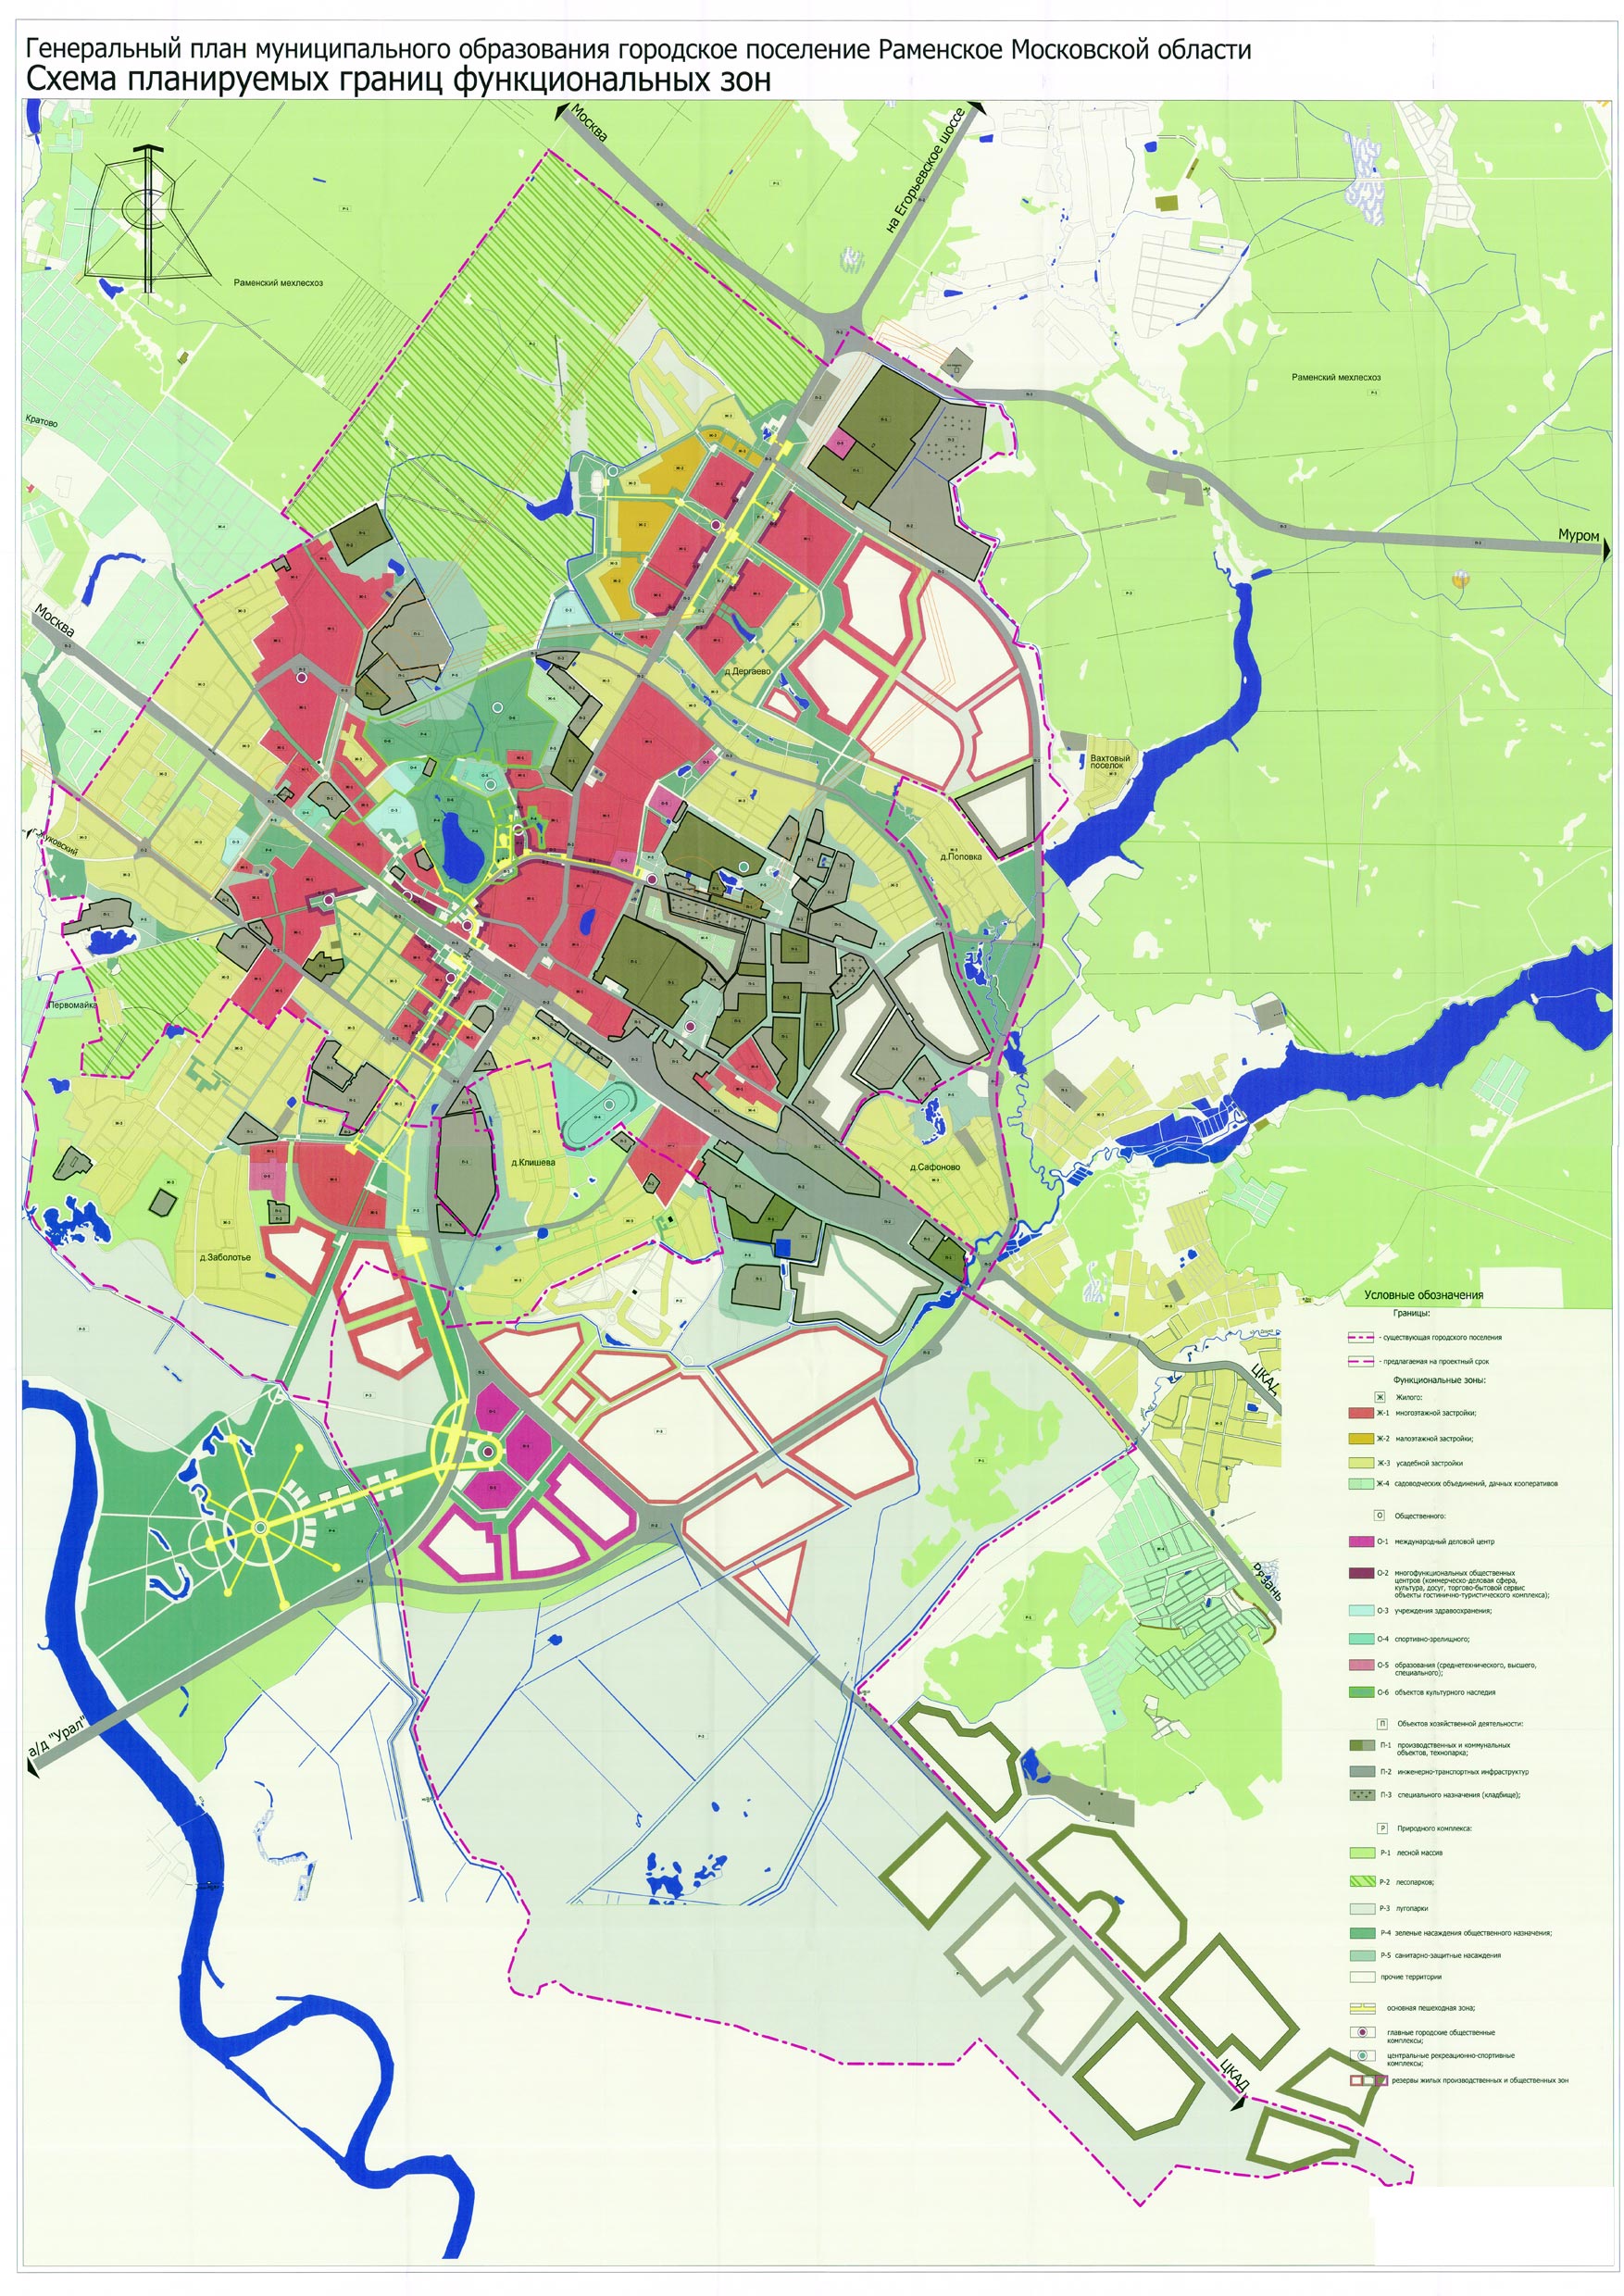 Генеральный план развития города Раменское